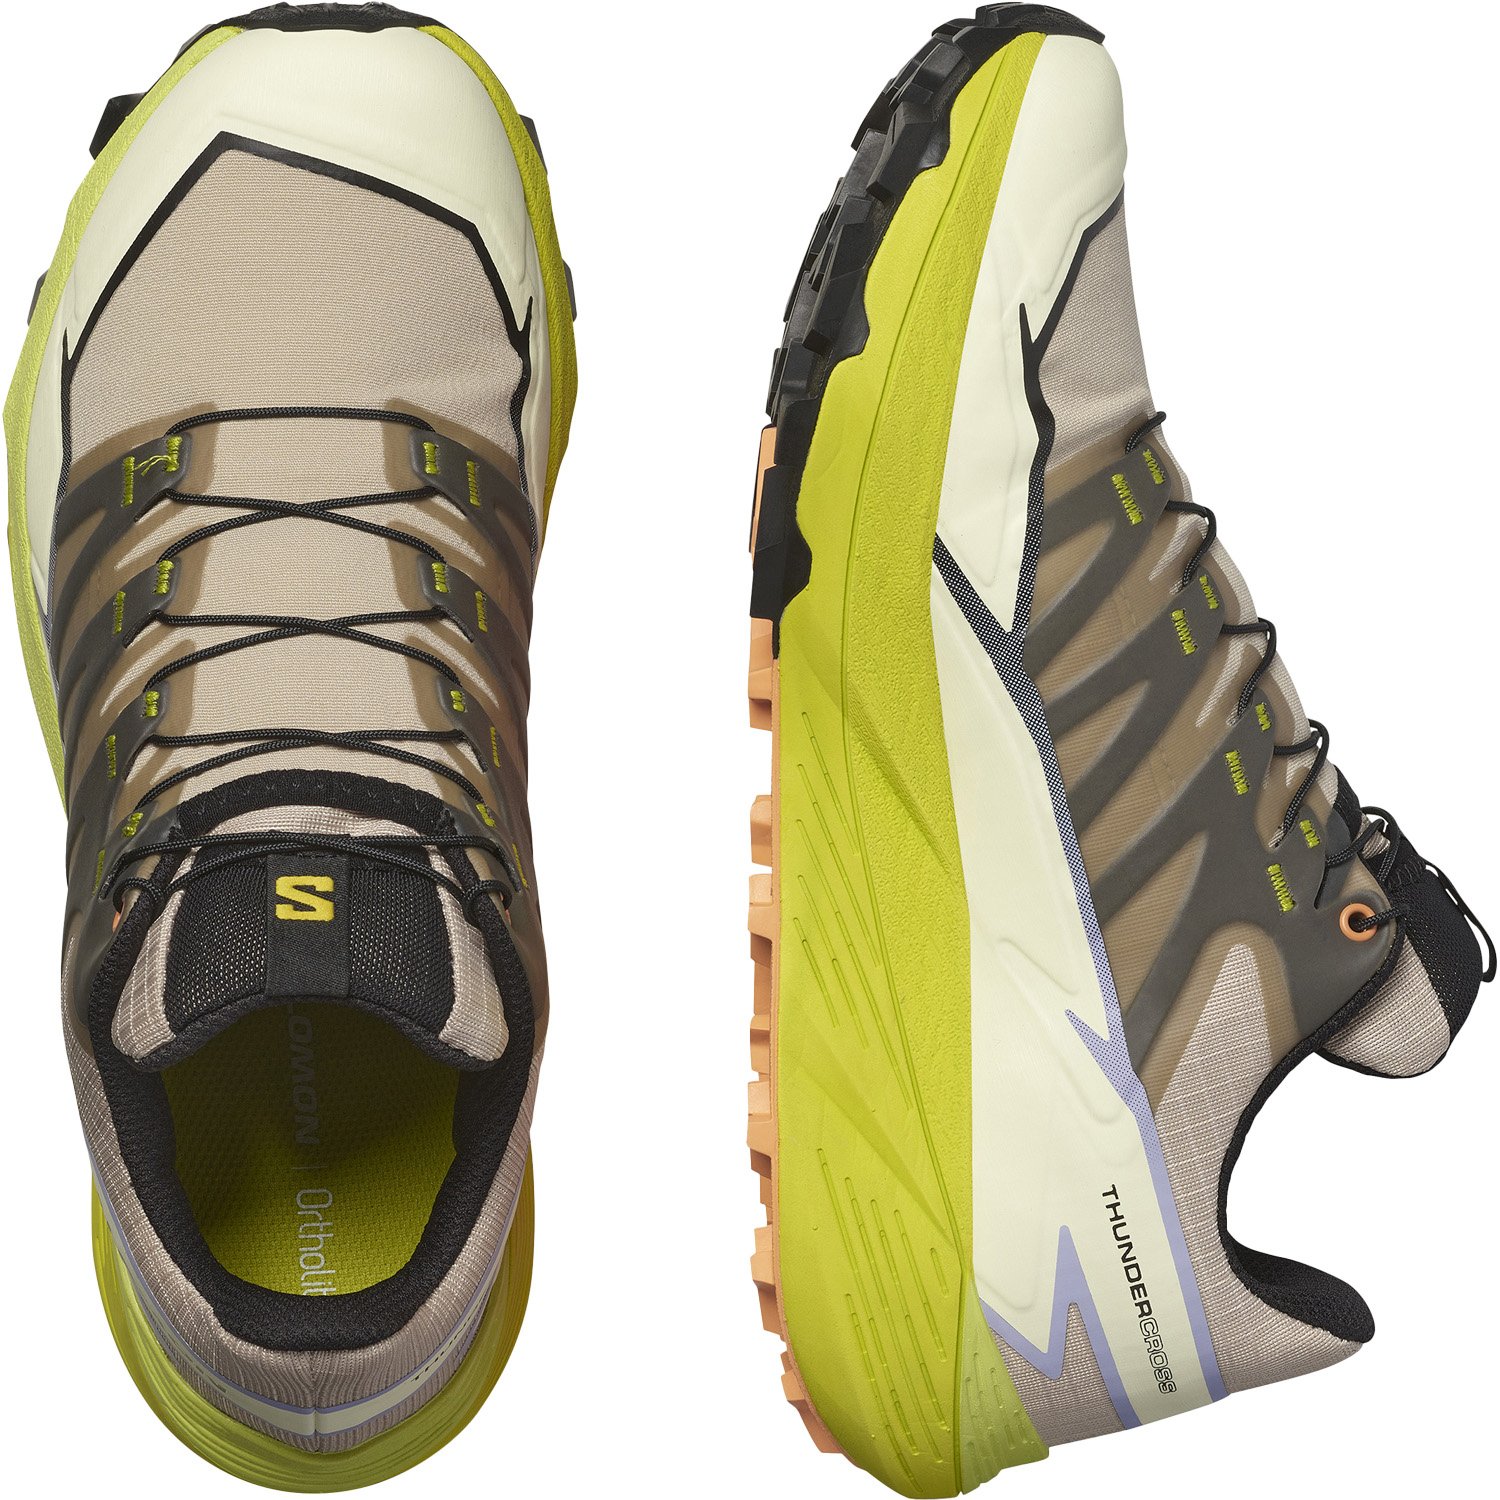 Salomon Thundercross Kadın Patika Koşu Ayakkabısı - Renkli - 1